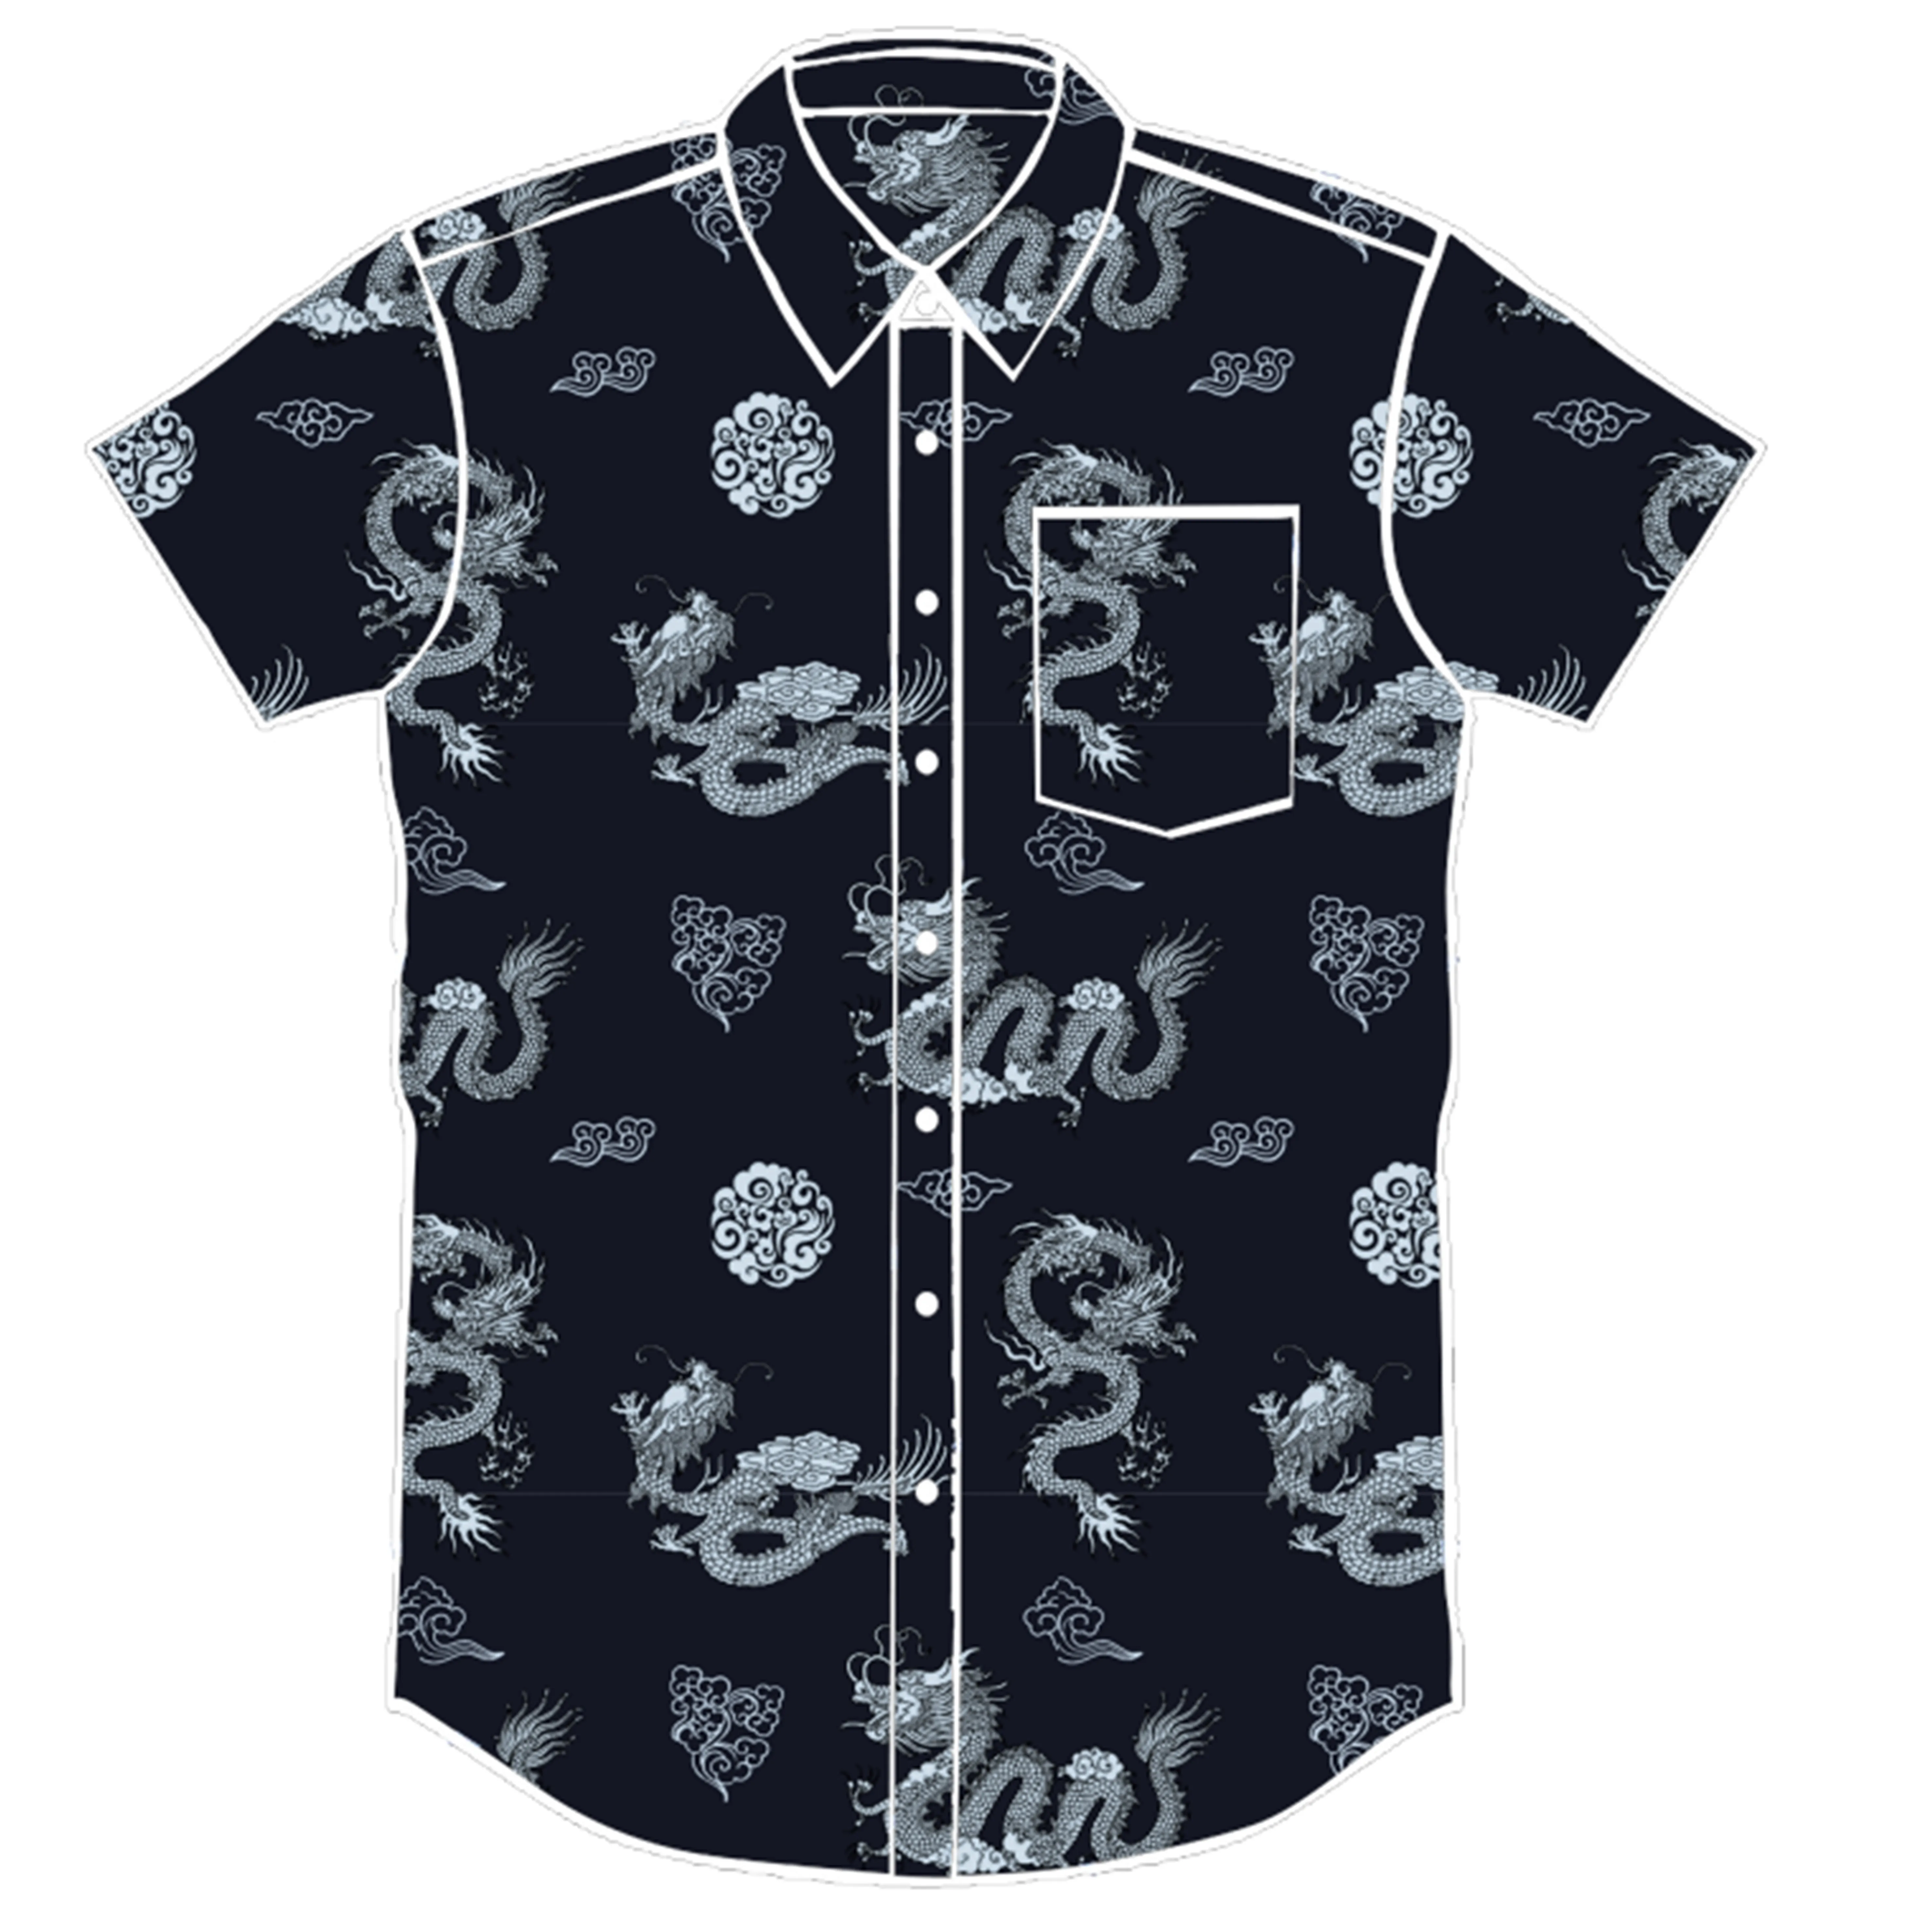 Mens मुद्रित शर्ट, ड्रैगन प्रिंट, चीनी शैली मुद्रित शर्ट